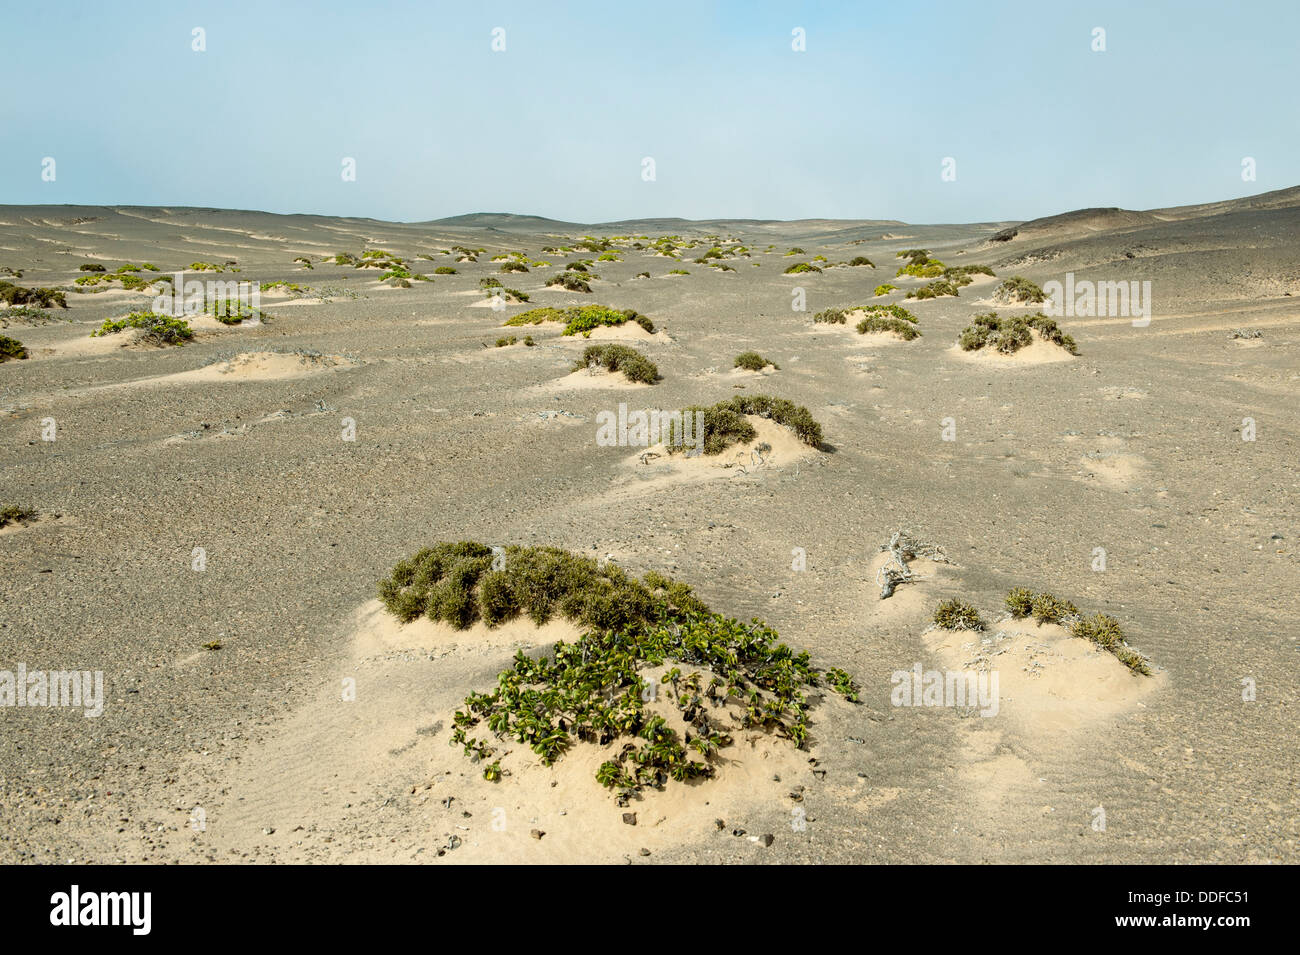 Dunes de sable où la végétation est clairsemée, Skeleton Coast National Park, Namibie Banque D'Images